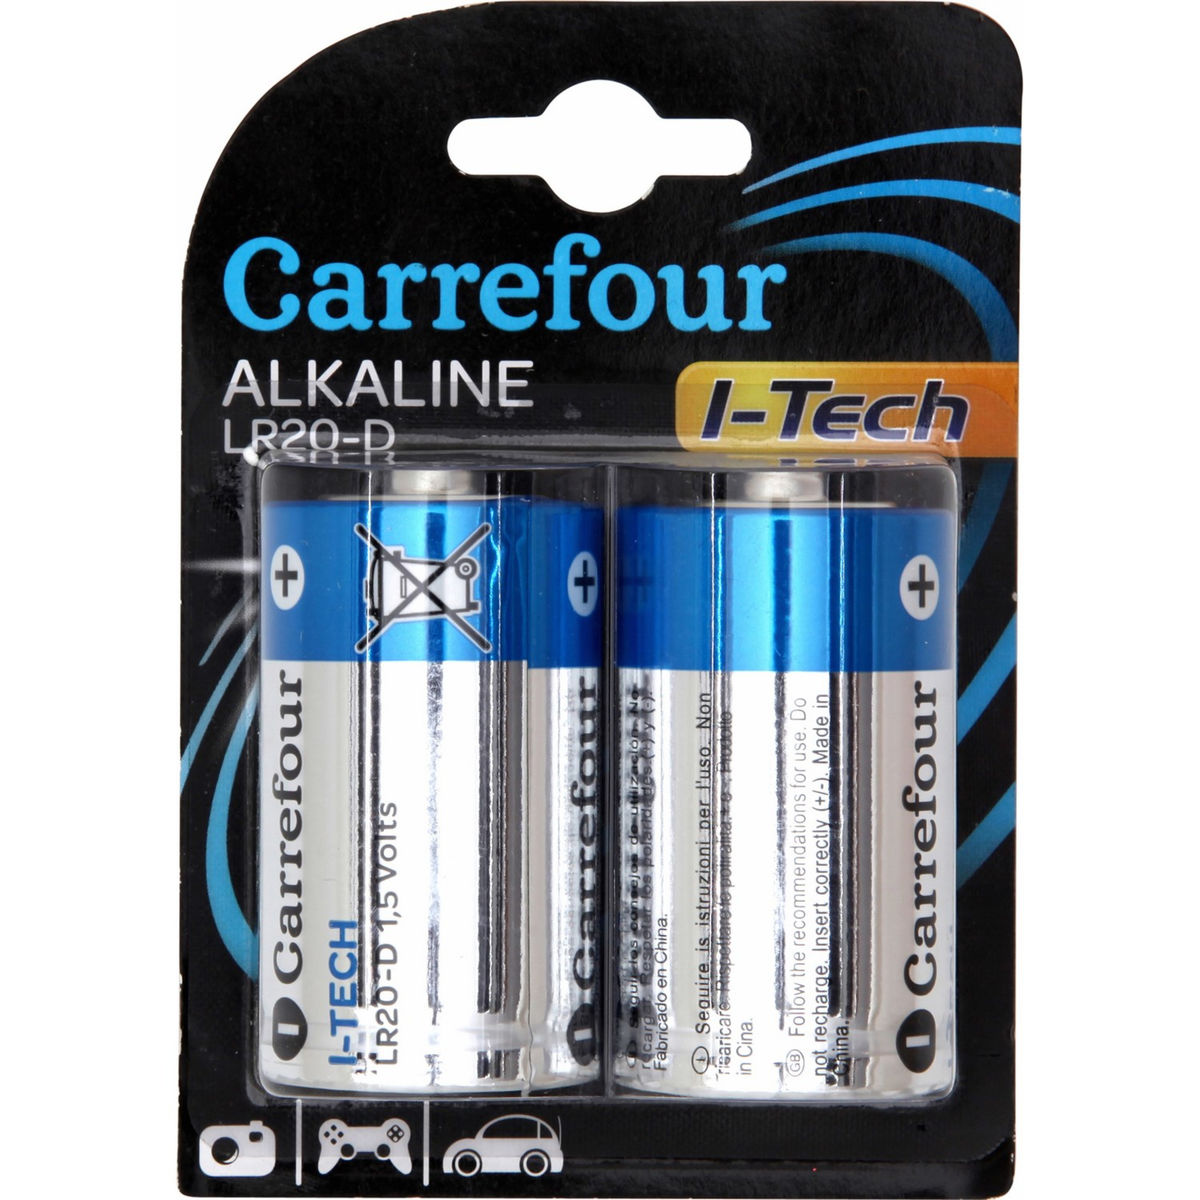 Carrefour 2 I-Tech Piles Alcaline LR20-D 1,5V